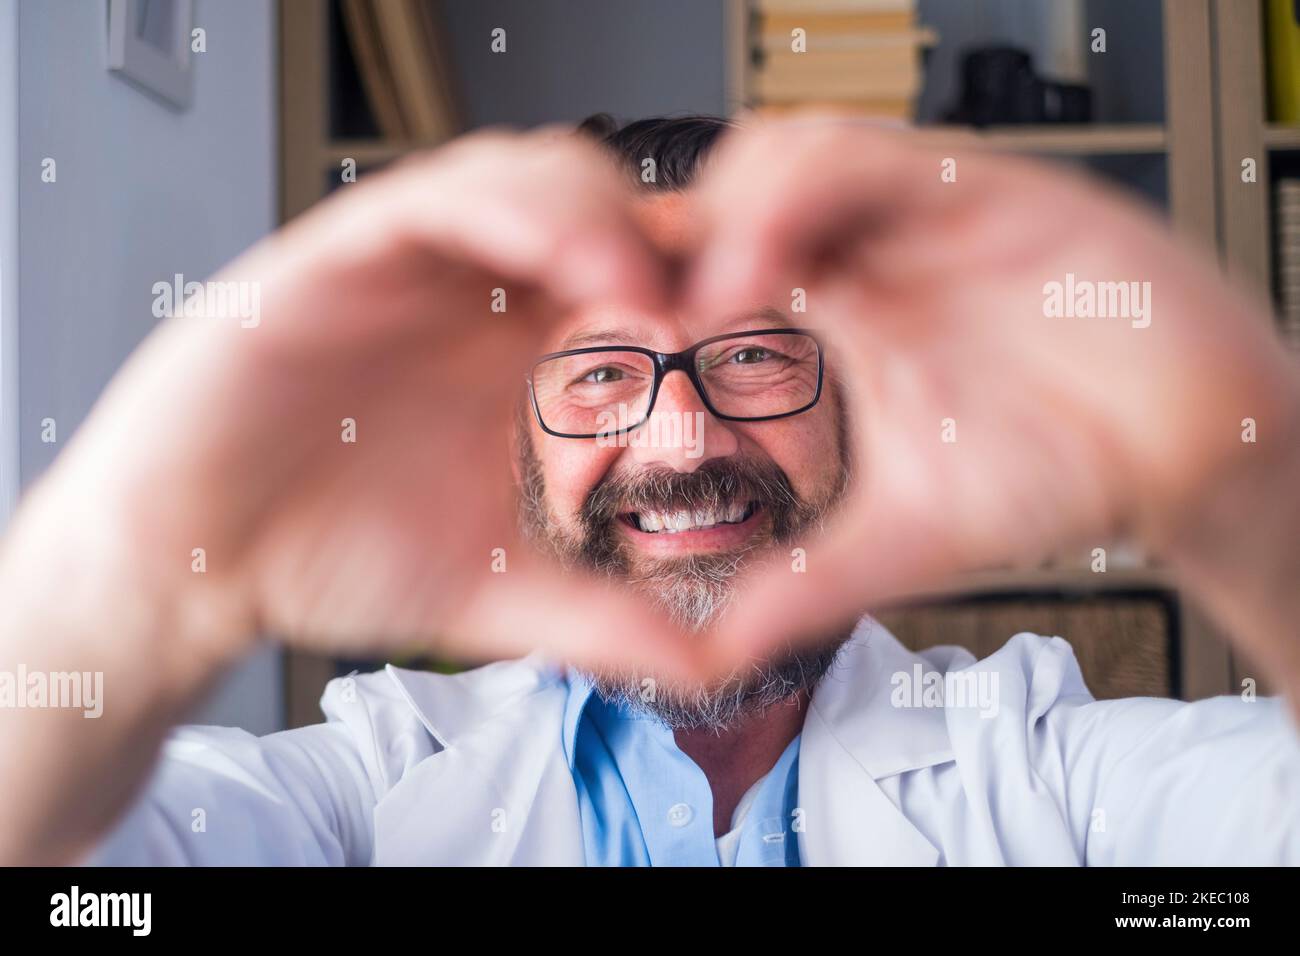 Homme faisant le geste de forme de coeur avec les mains. Souriant beau médecin caucasien homme faisant un symbole d'amour en utilisant ses mains. Professionnel de la santé exprimant l'amour et le soutien aux patients Banque D'Images